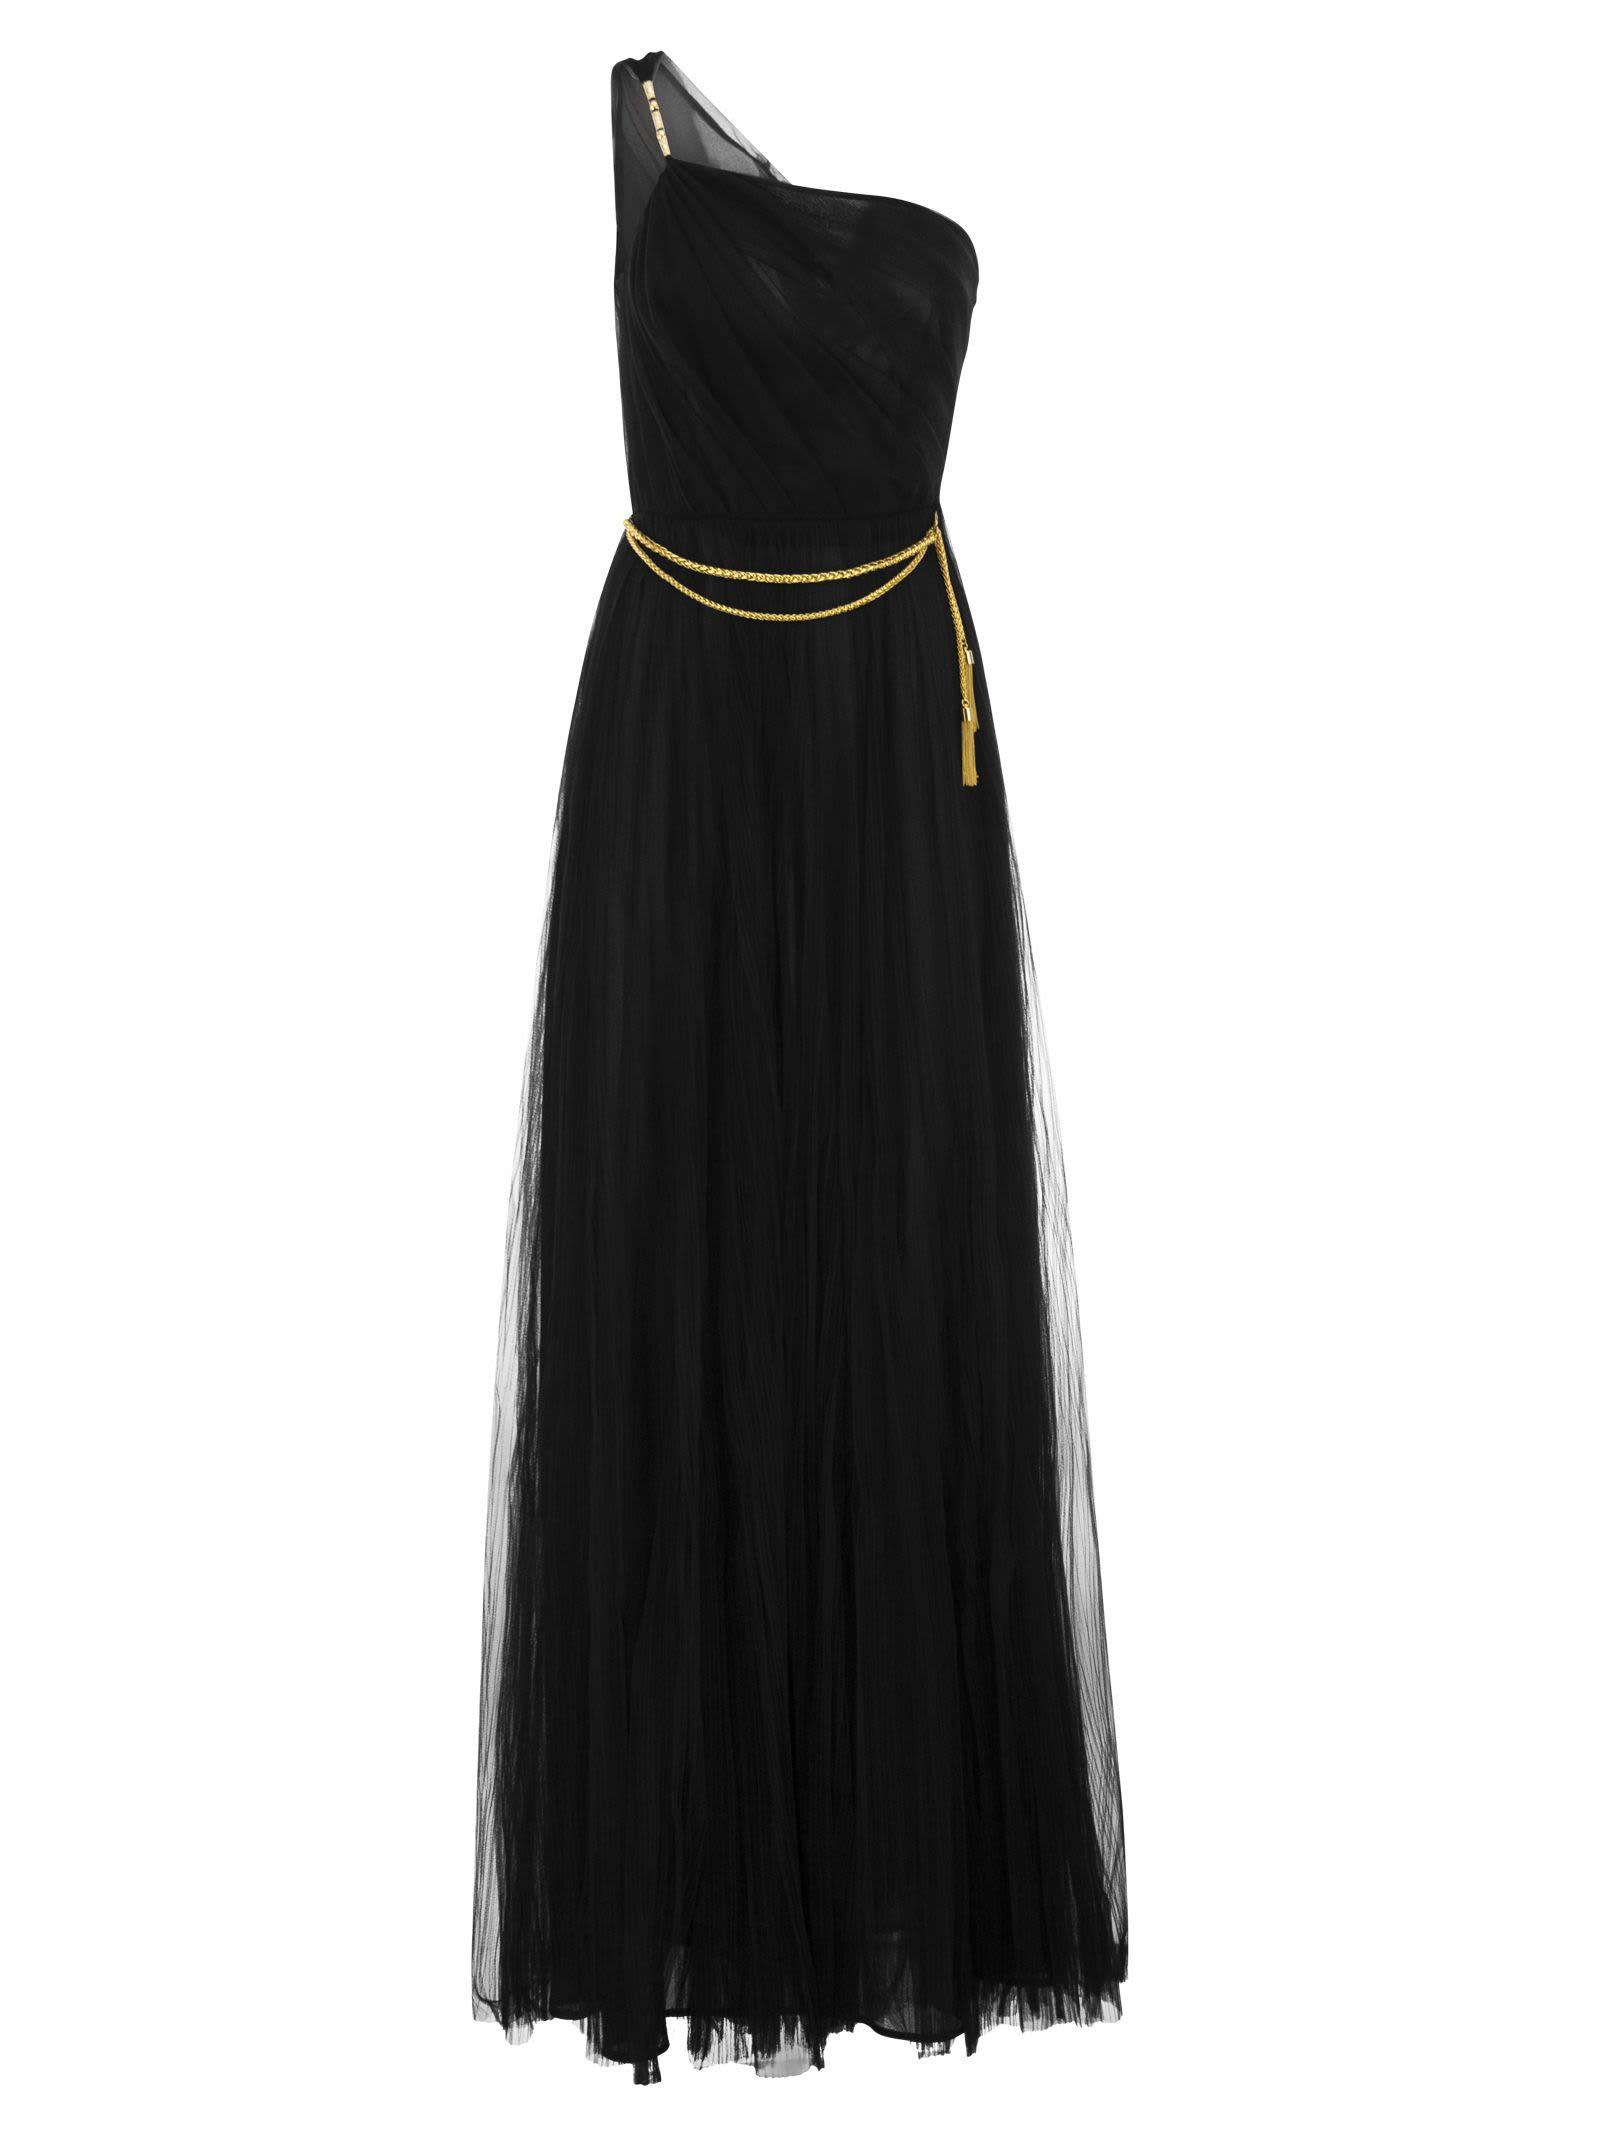 Elisabetta Franchi One-shoulder Tulle Red Carpet Dress in Black | Lyst UK